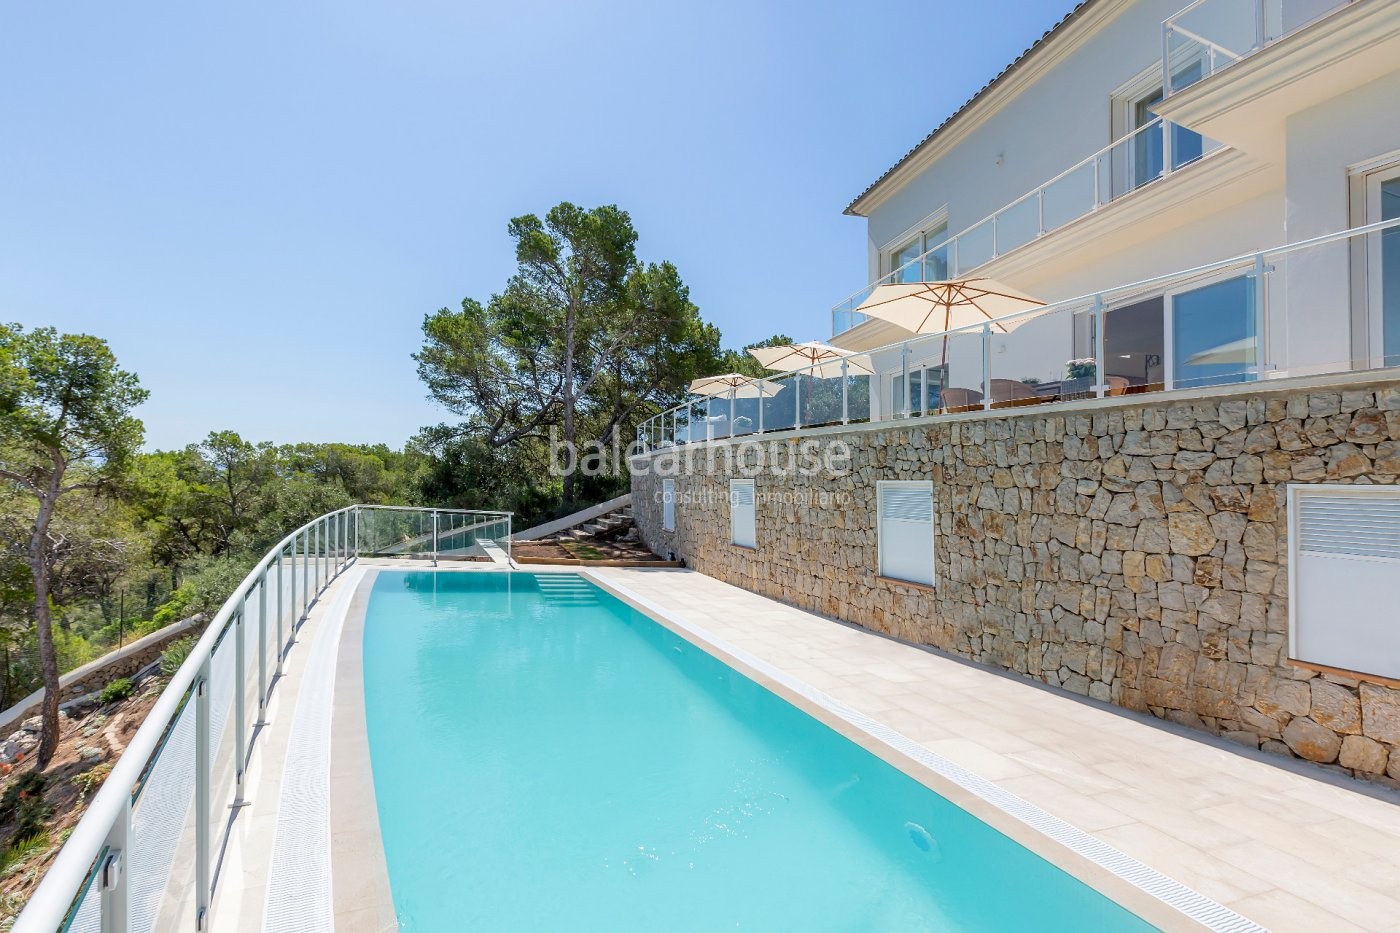 Villa in erster Linie mit direktem Zugang zum Meer, ganz in der Nähe von Palma